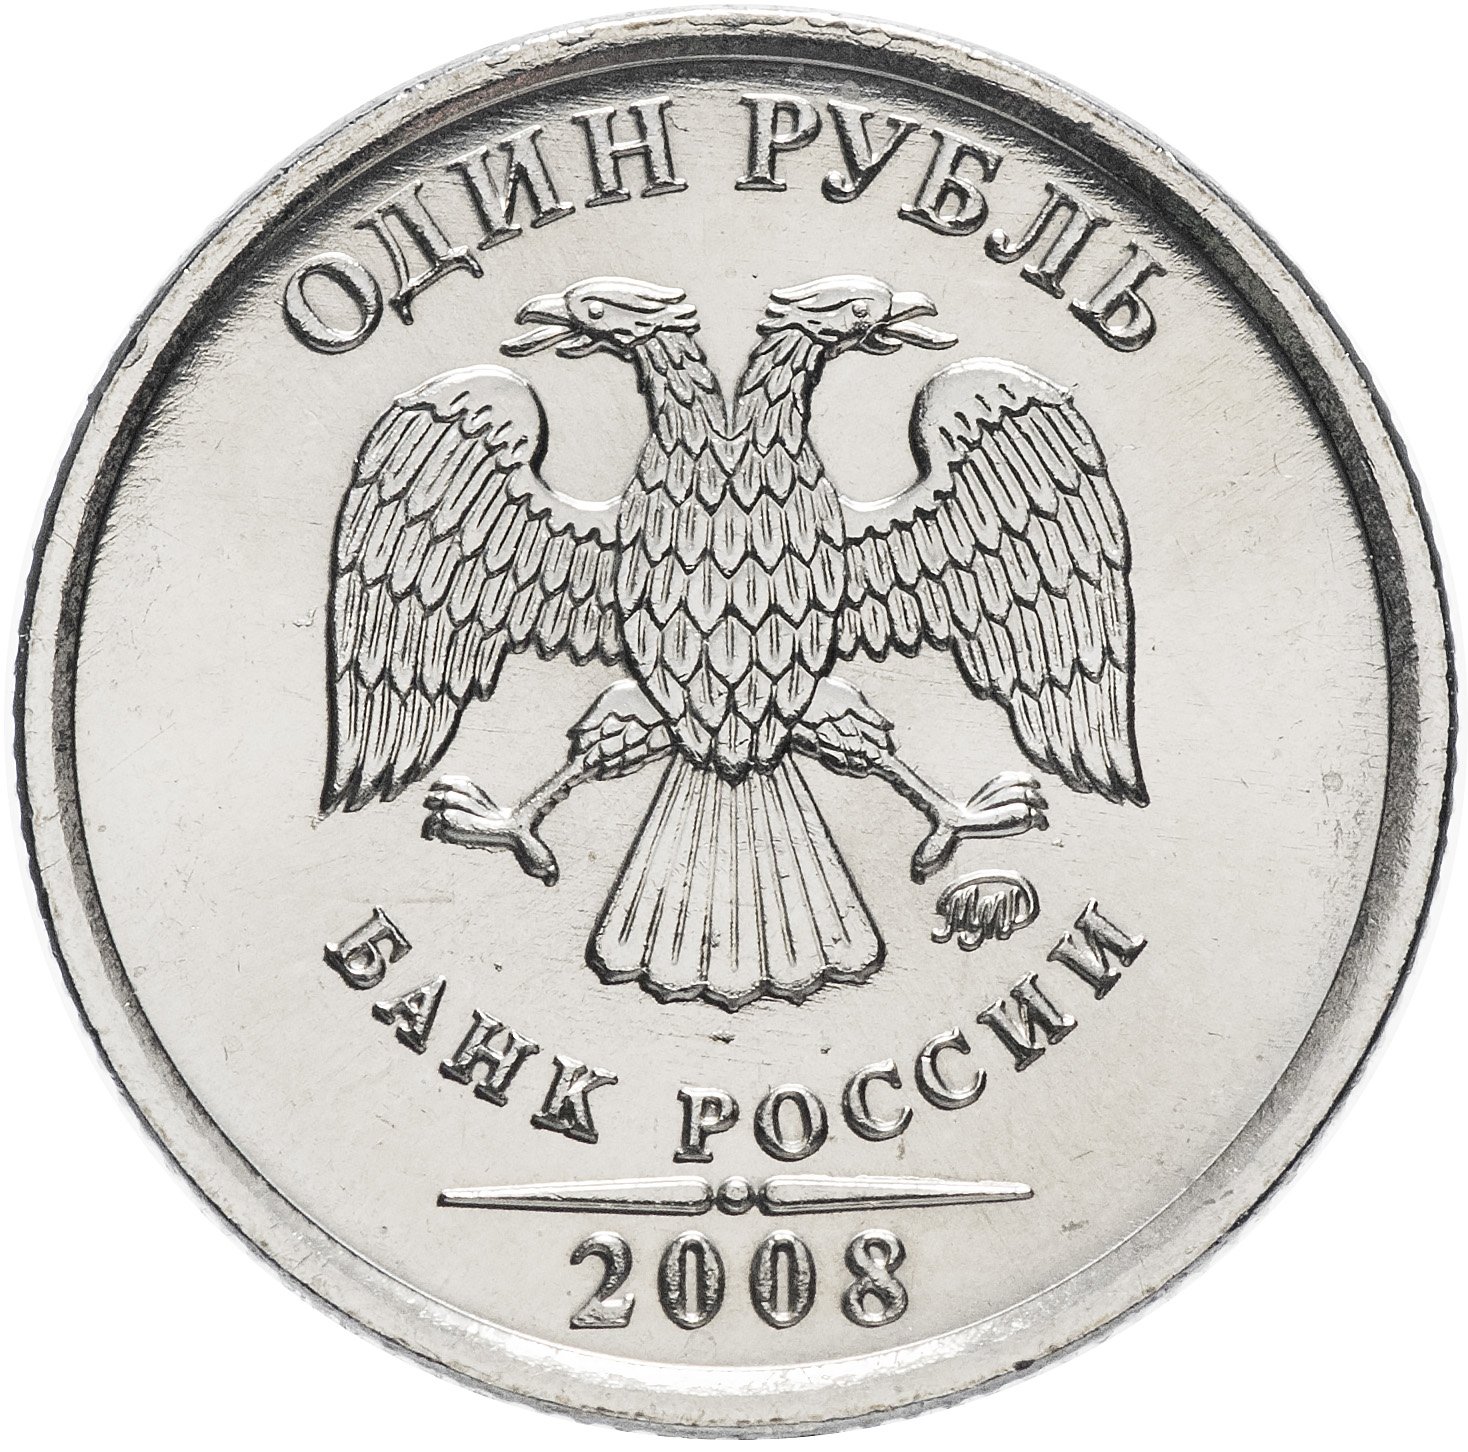 Сколько Стоит Рубль 2008 Года Цена